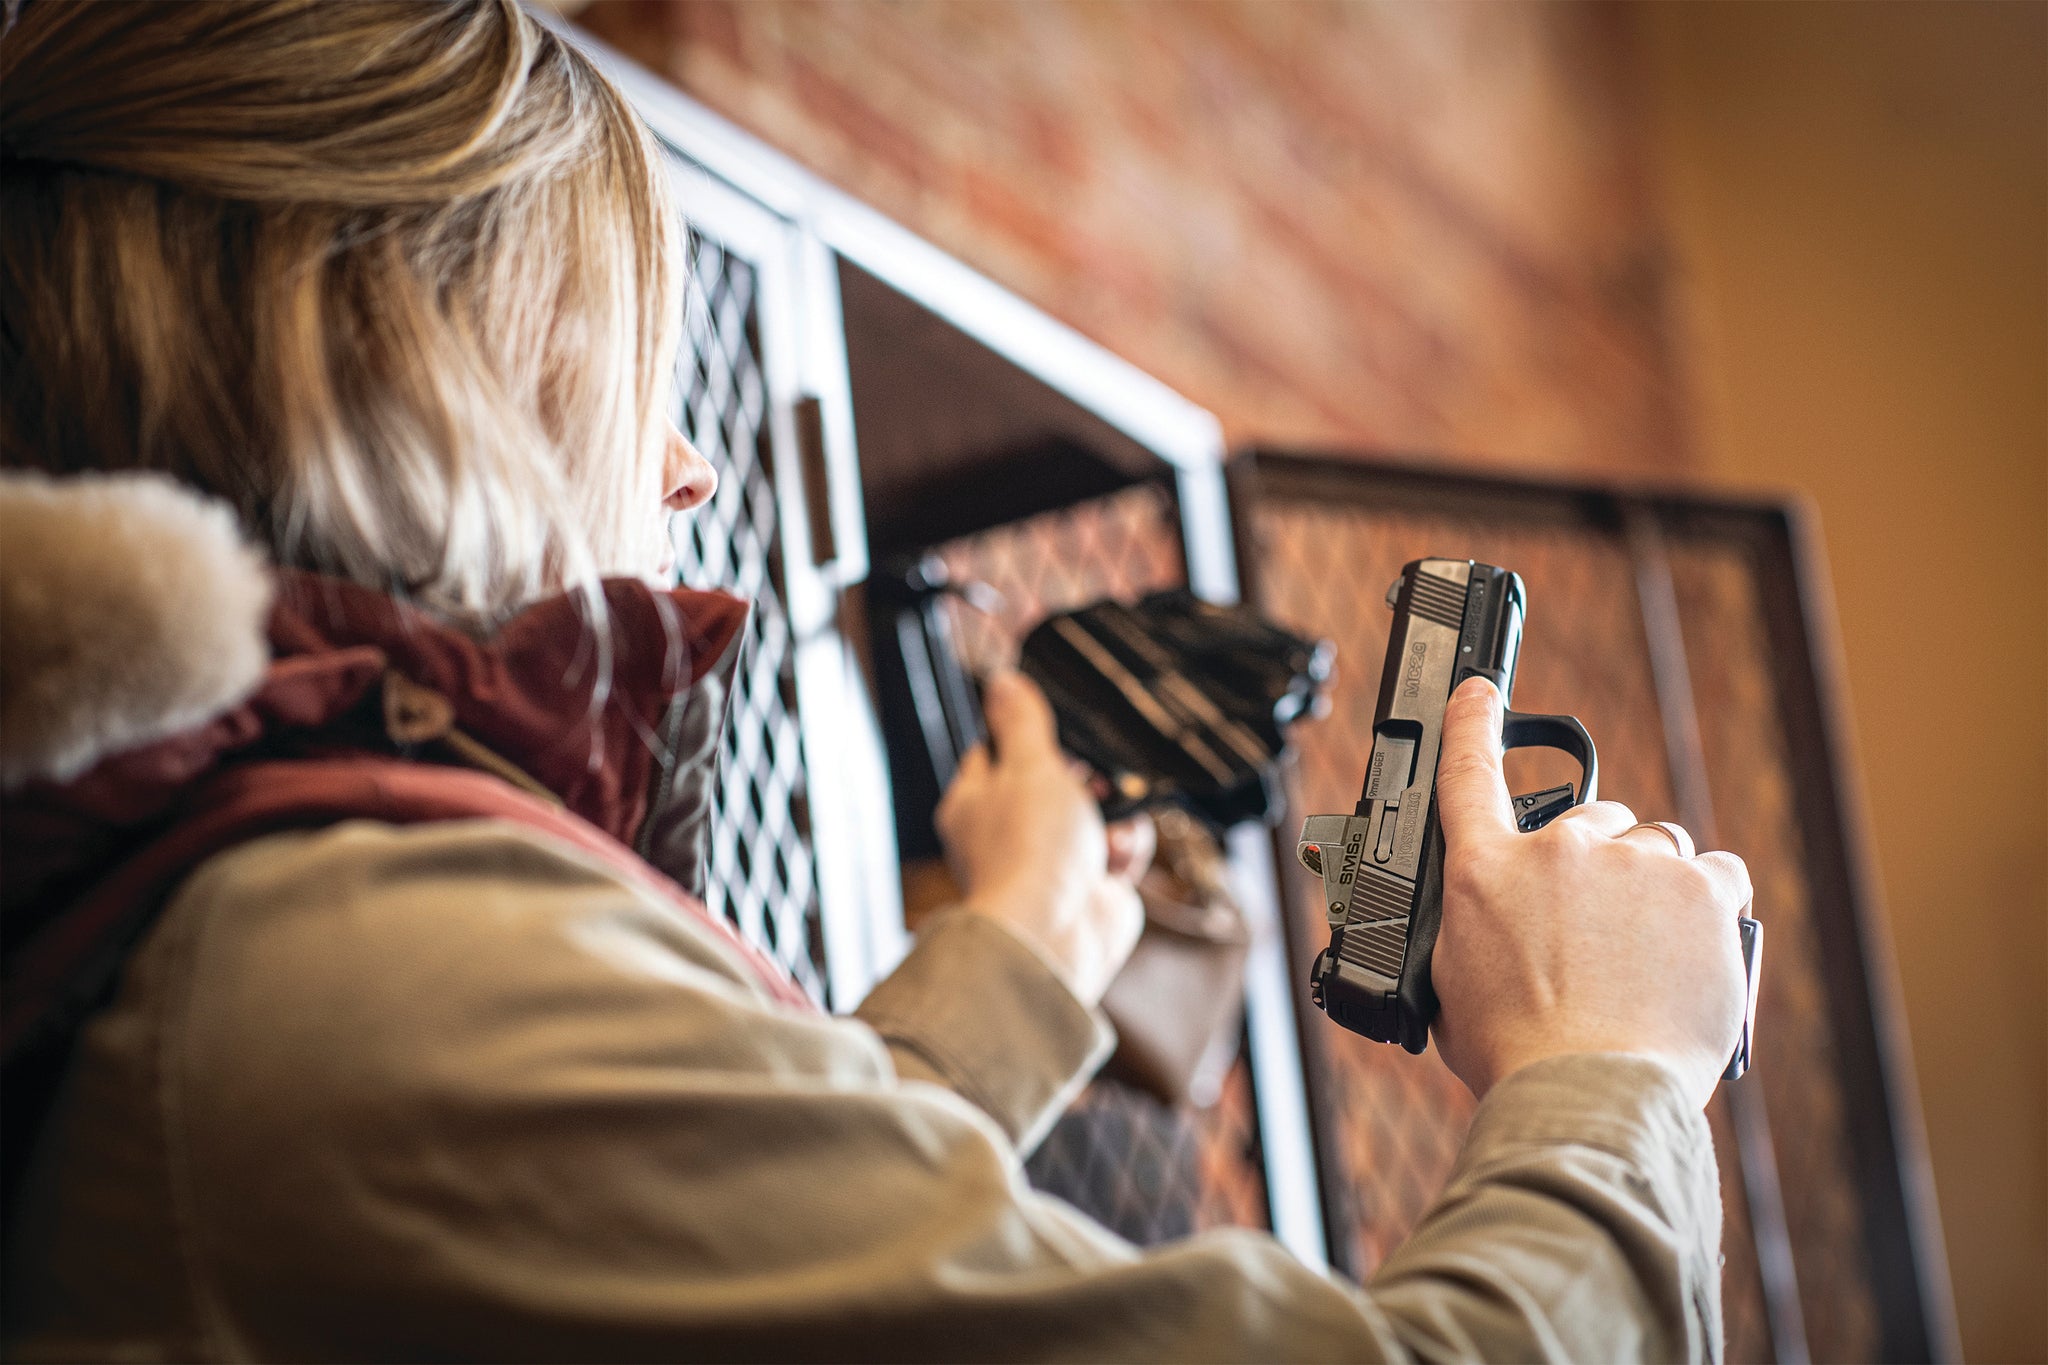 A woman removes a handgun from a gun locker